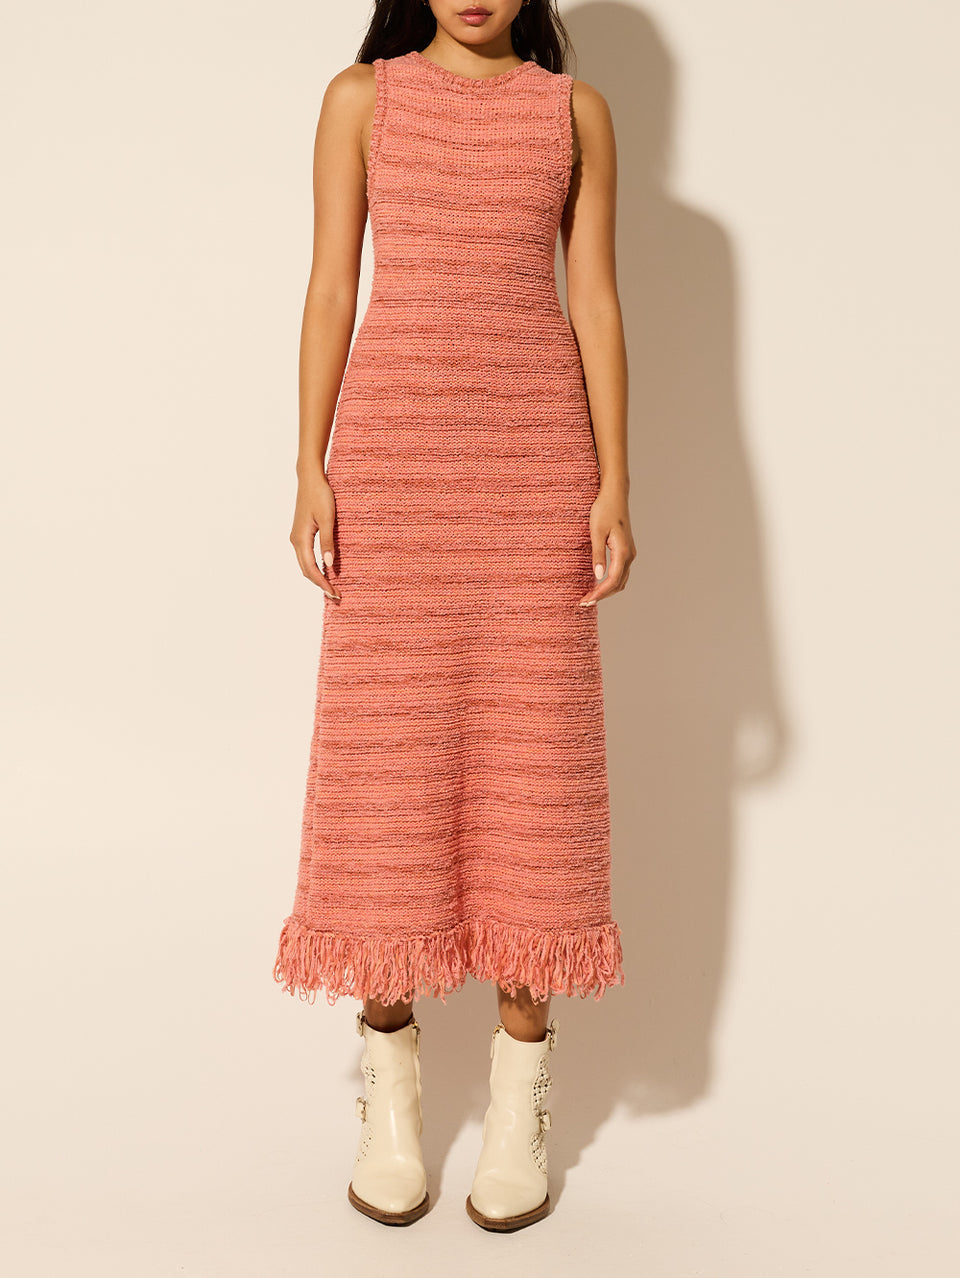 Luciana Knit Midi Dress Pink KIVARI | Model wears pink knit midi dress